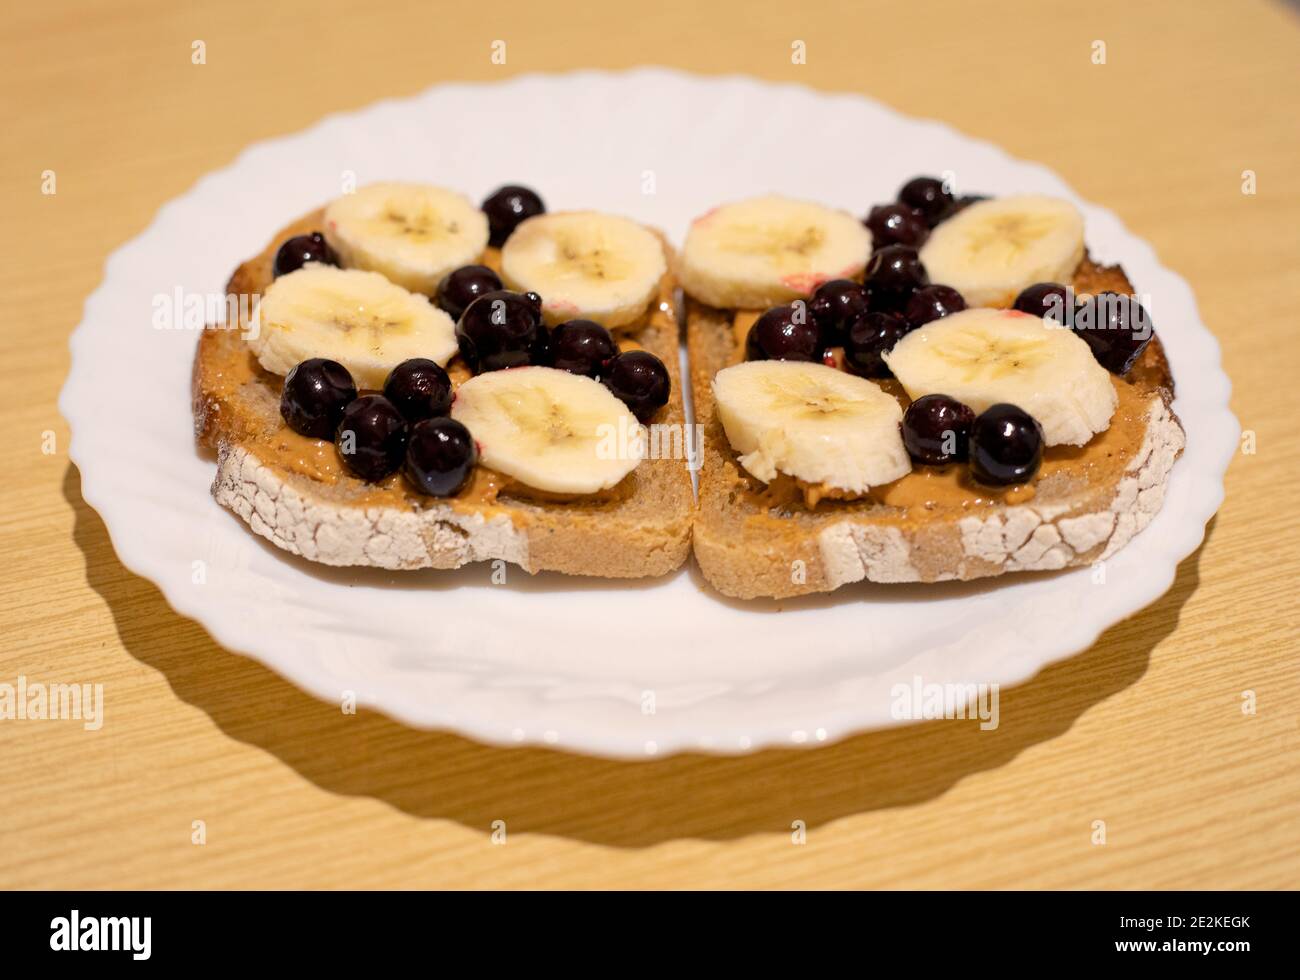 Un postre saludable para el desayuno, el almuerzo o la cena pan oscuro con mantequilla de maní, grosella negra y rodajas de plátano Foto de stock